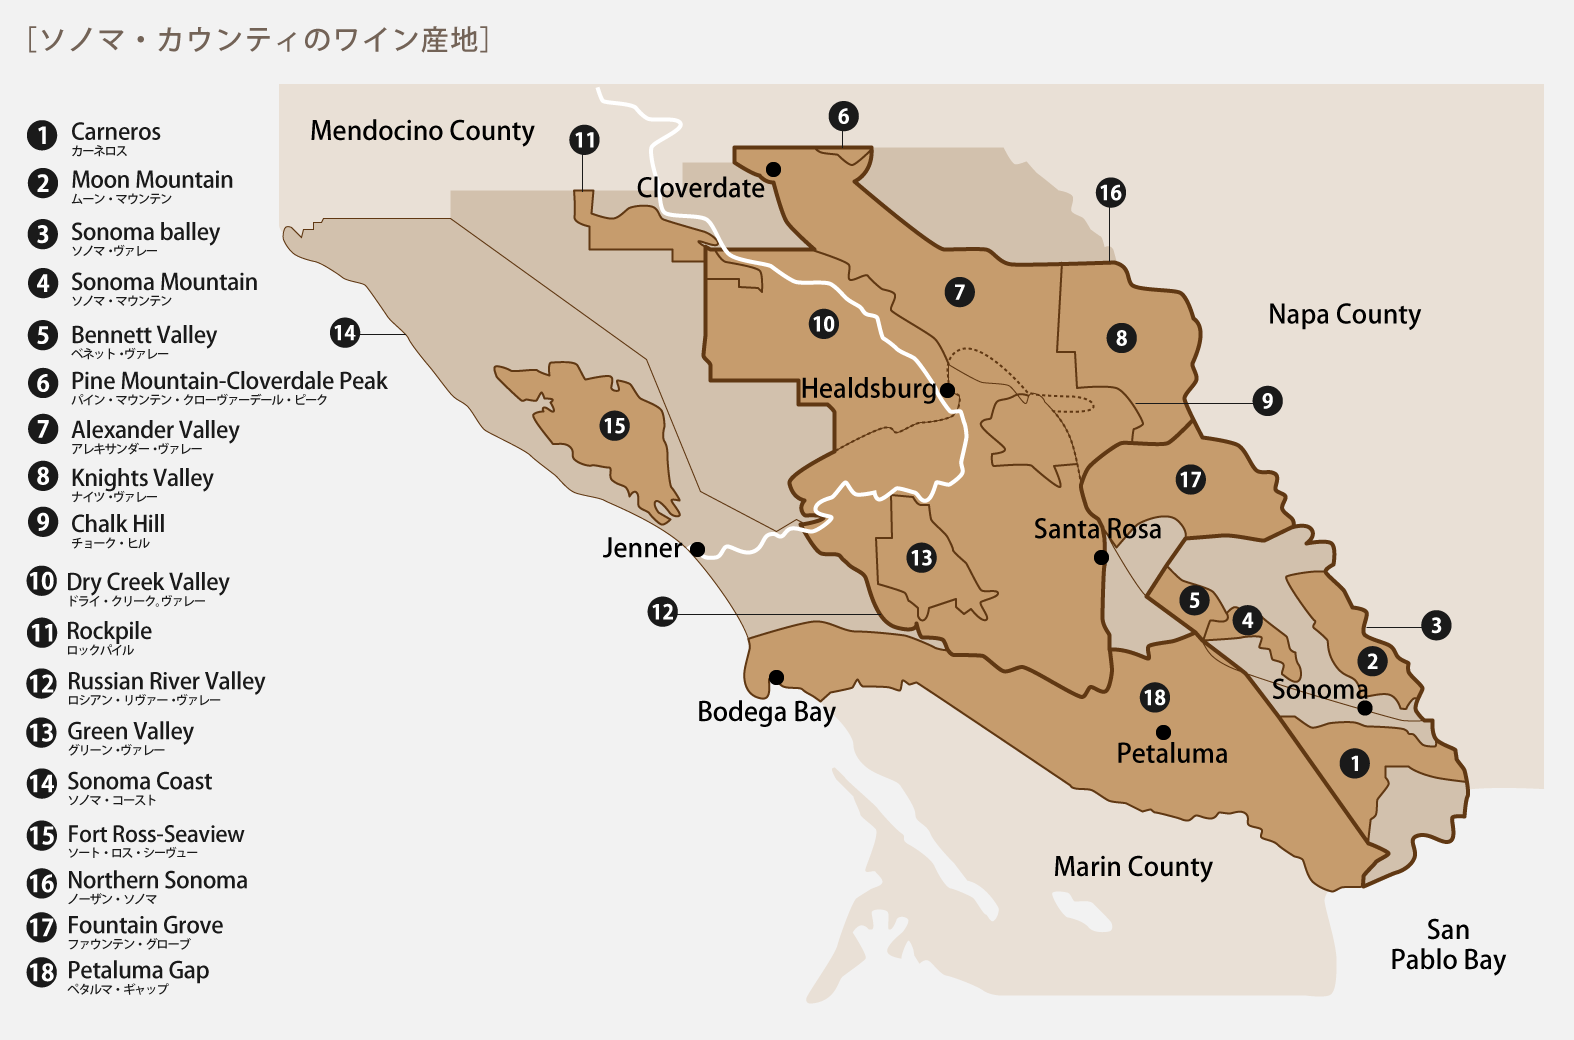 ソノマ・カウンティのワイン産地のマップ